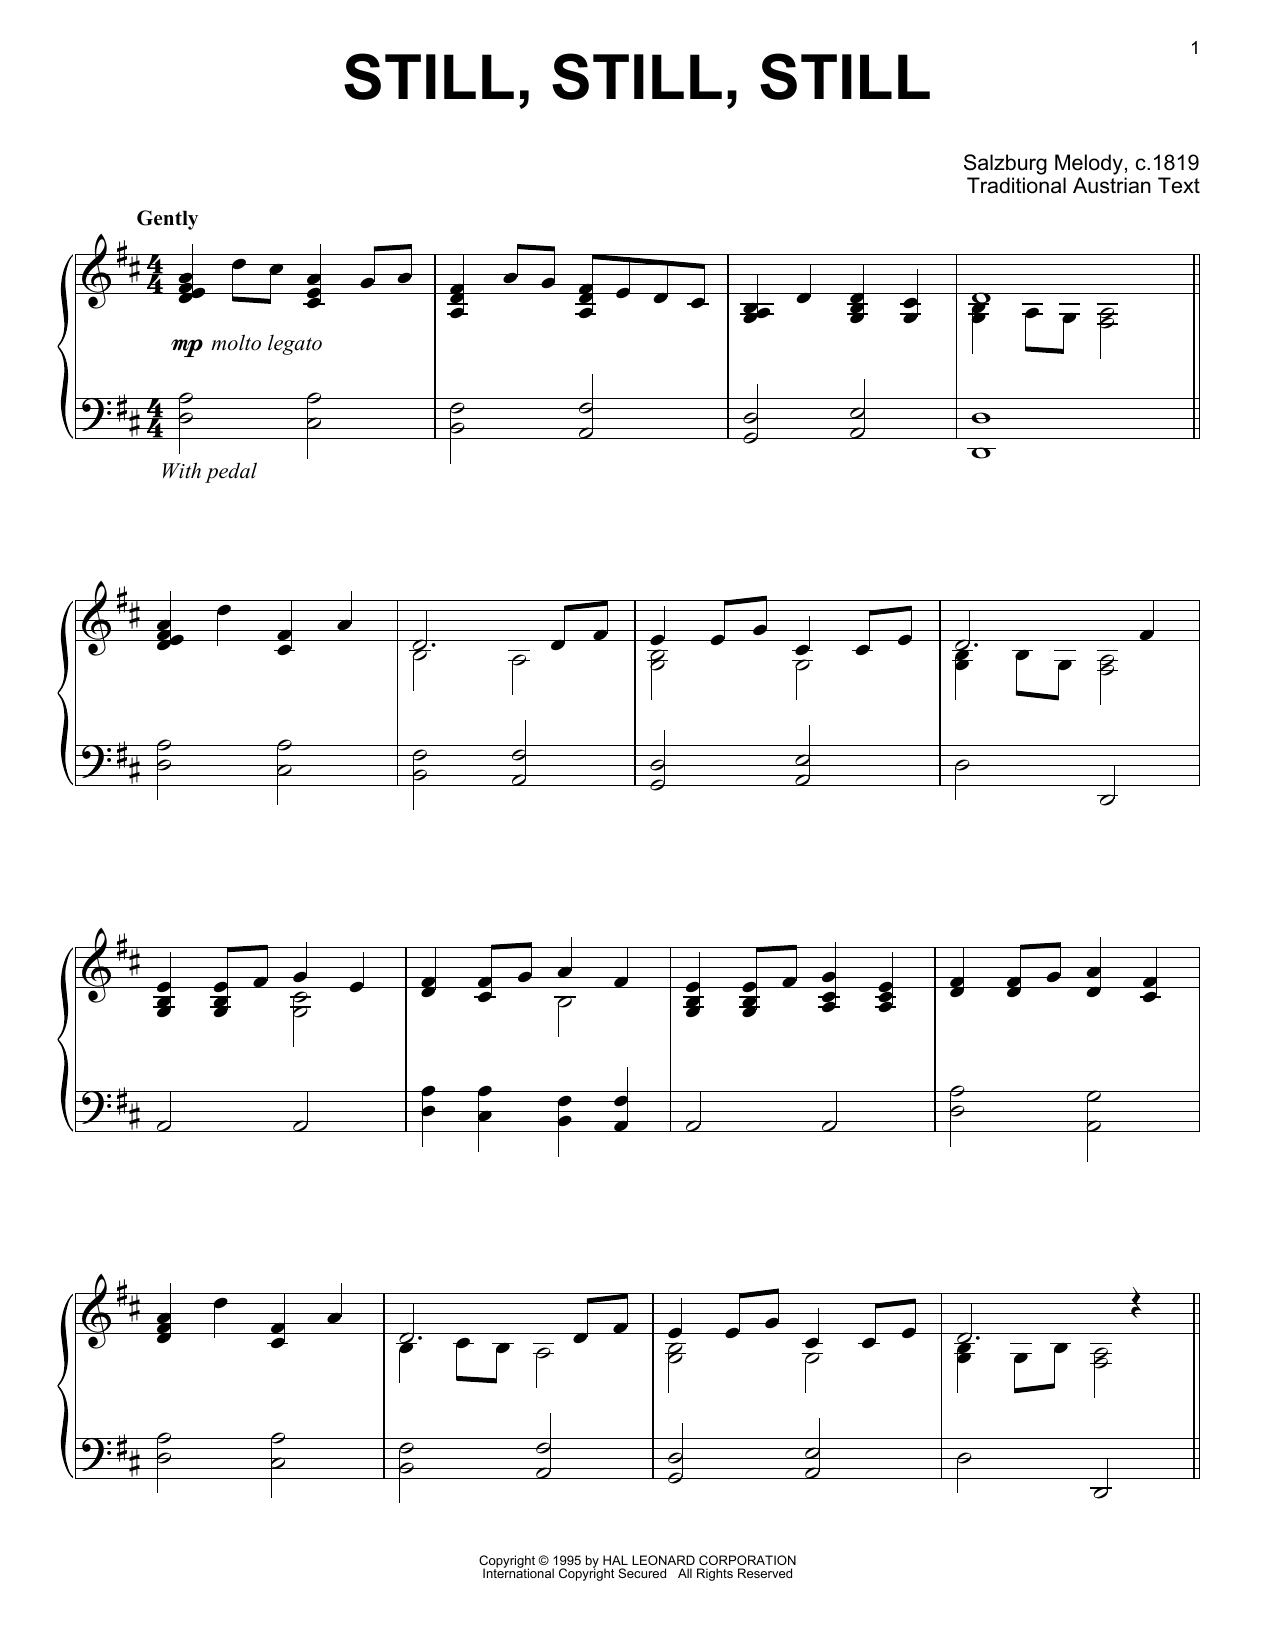 Traditional Austrian Text Still, Still, Still Sheet Music Notes & Chords for Clarinet - Download or Print PDF